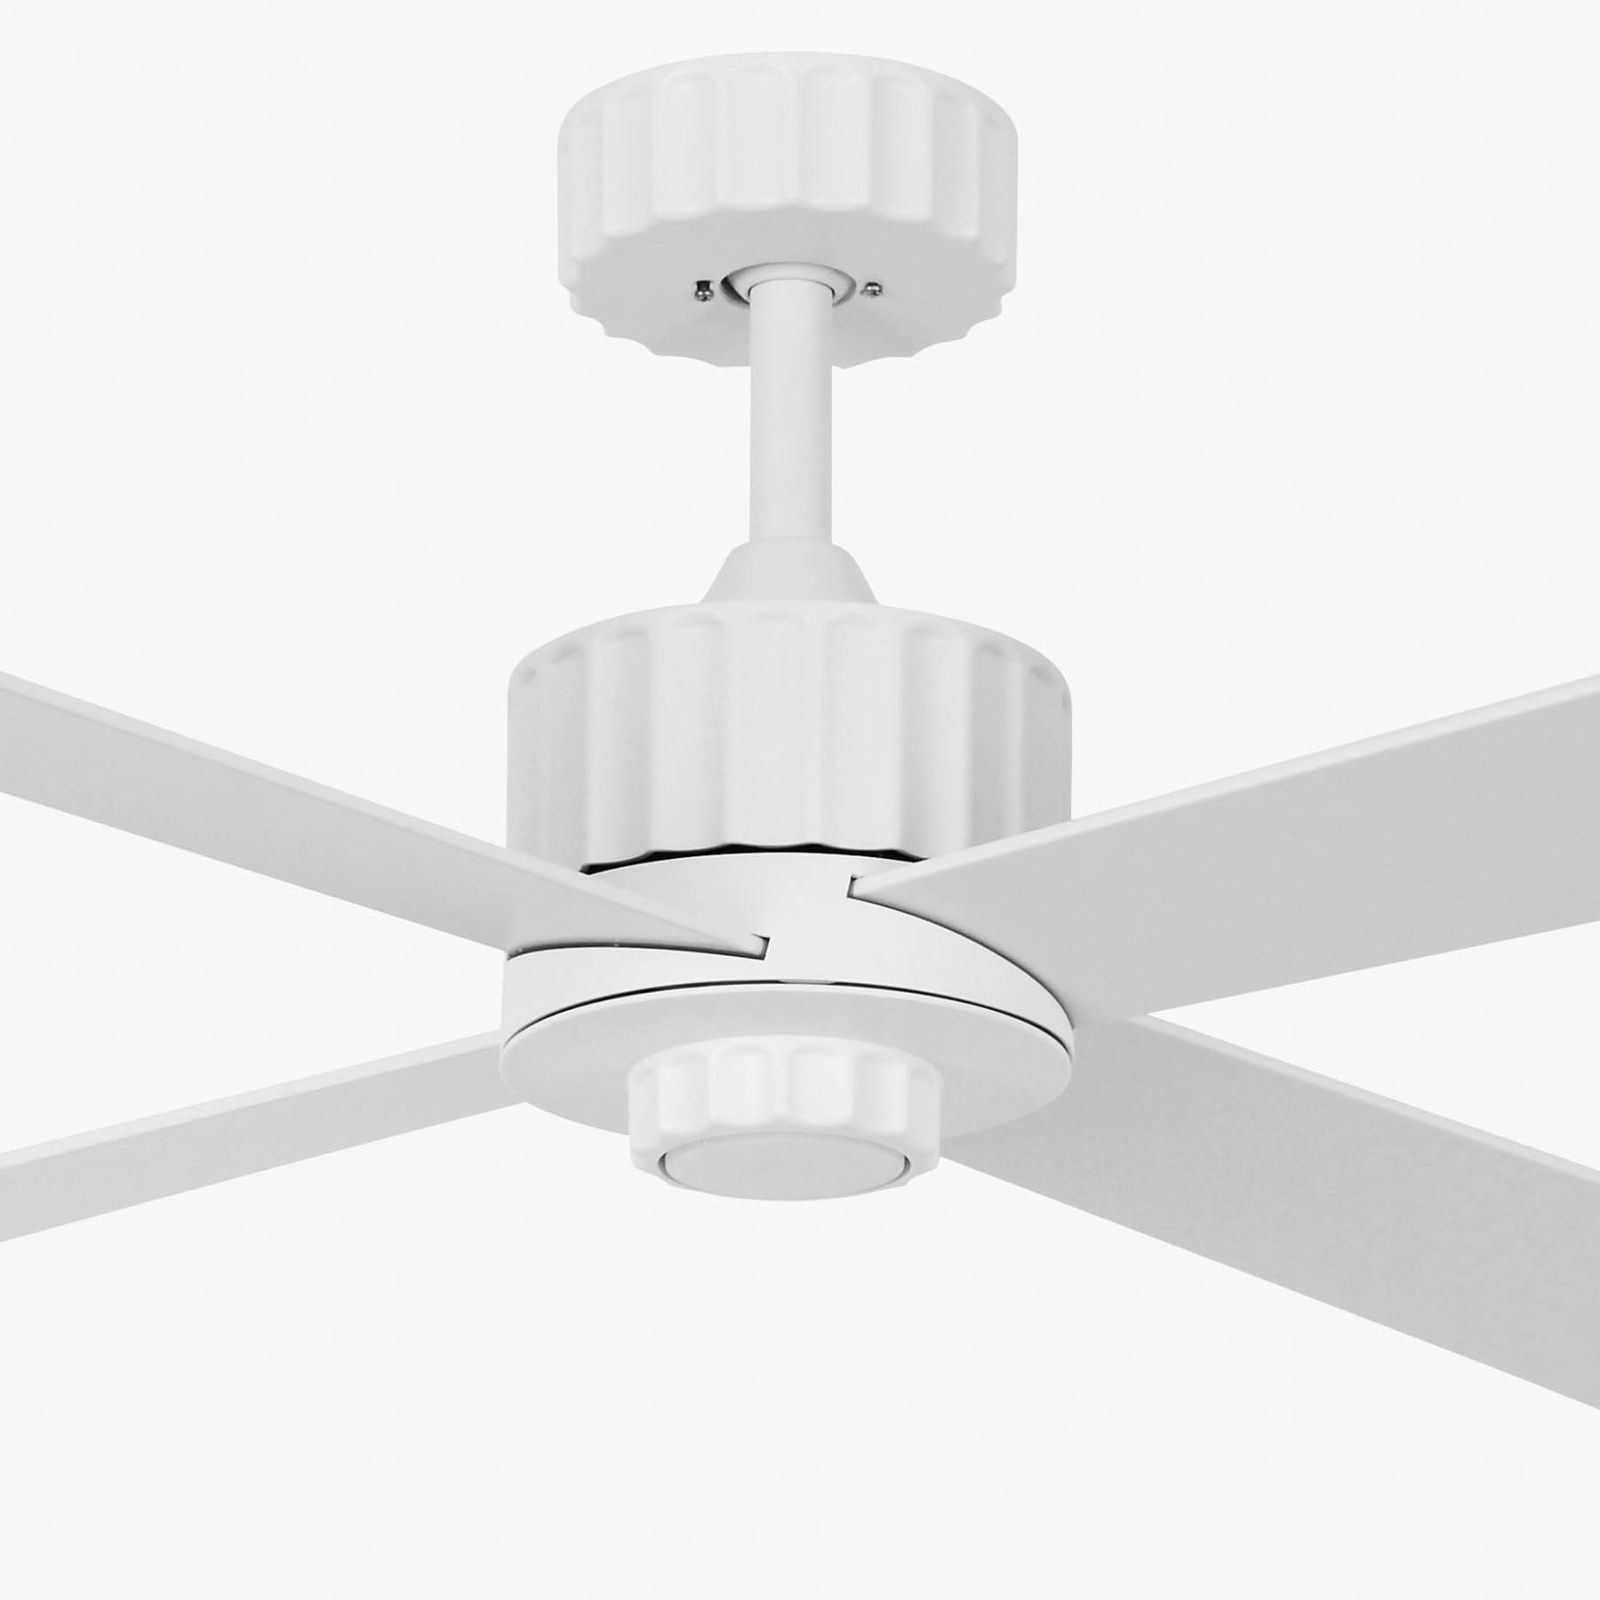 Beacon ceiling fan with light Newport, white/oak, quiet